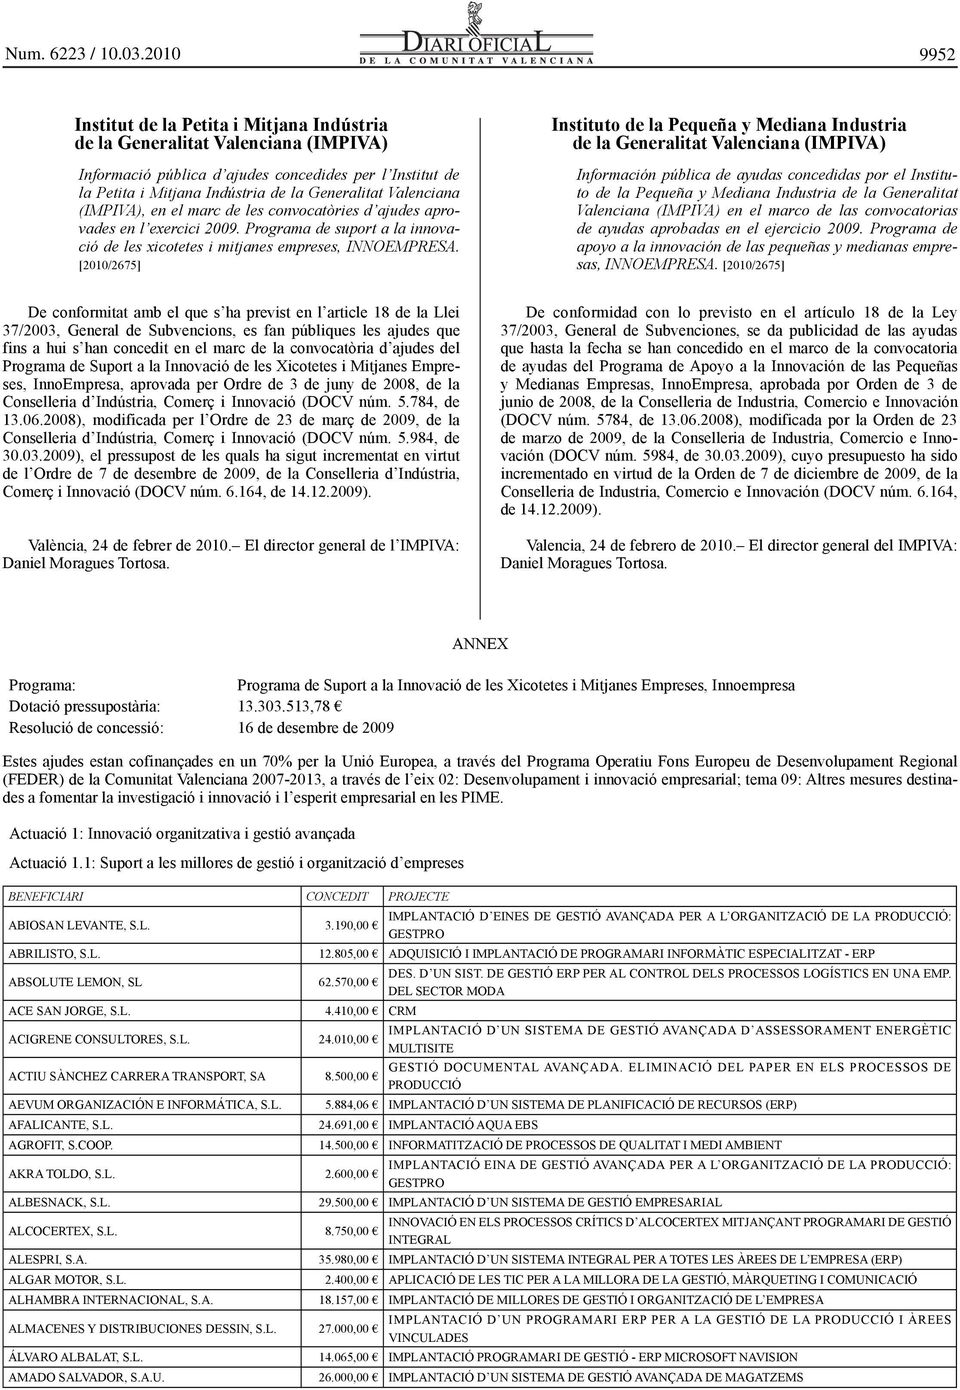 [2010/2675] Instituto de la Pequeña y Mediana Industria de la Generalitat Valenciana (IMPIVA) Información pública de ayudas concedidas por el Instituto de la Pequeña y Mediana Industria de la